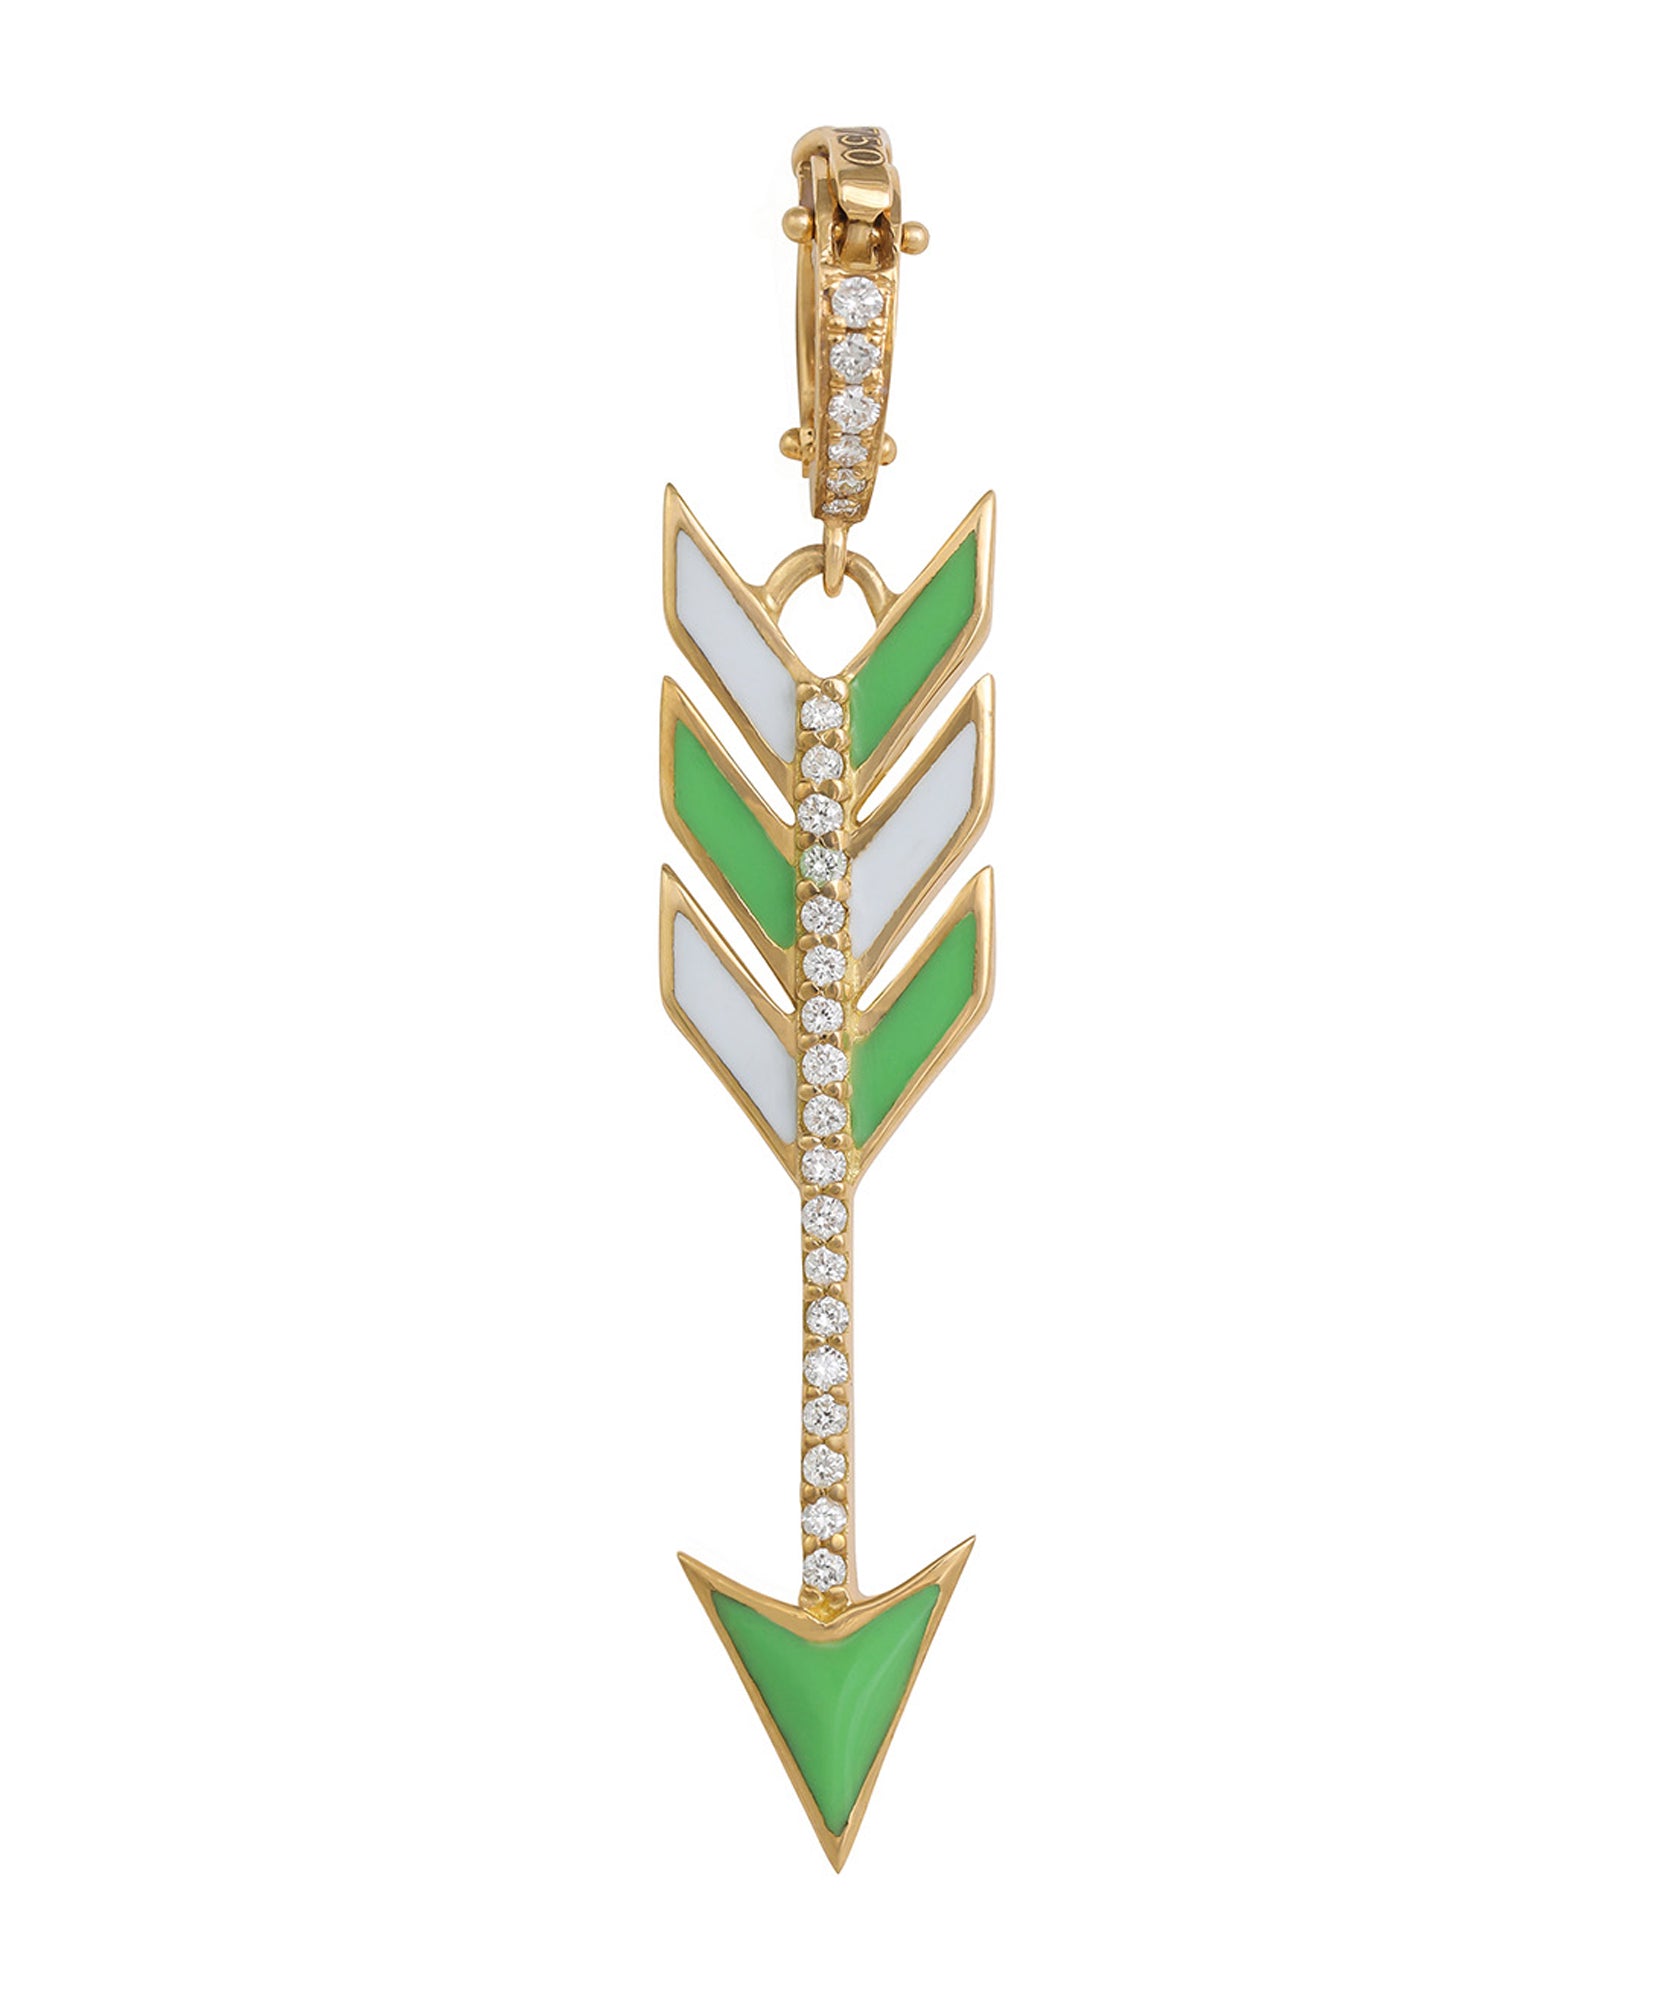 J by Boghossian, necklace, pendant, gold, arrow, Cupid's Arrow, charm, green enamel